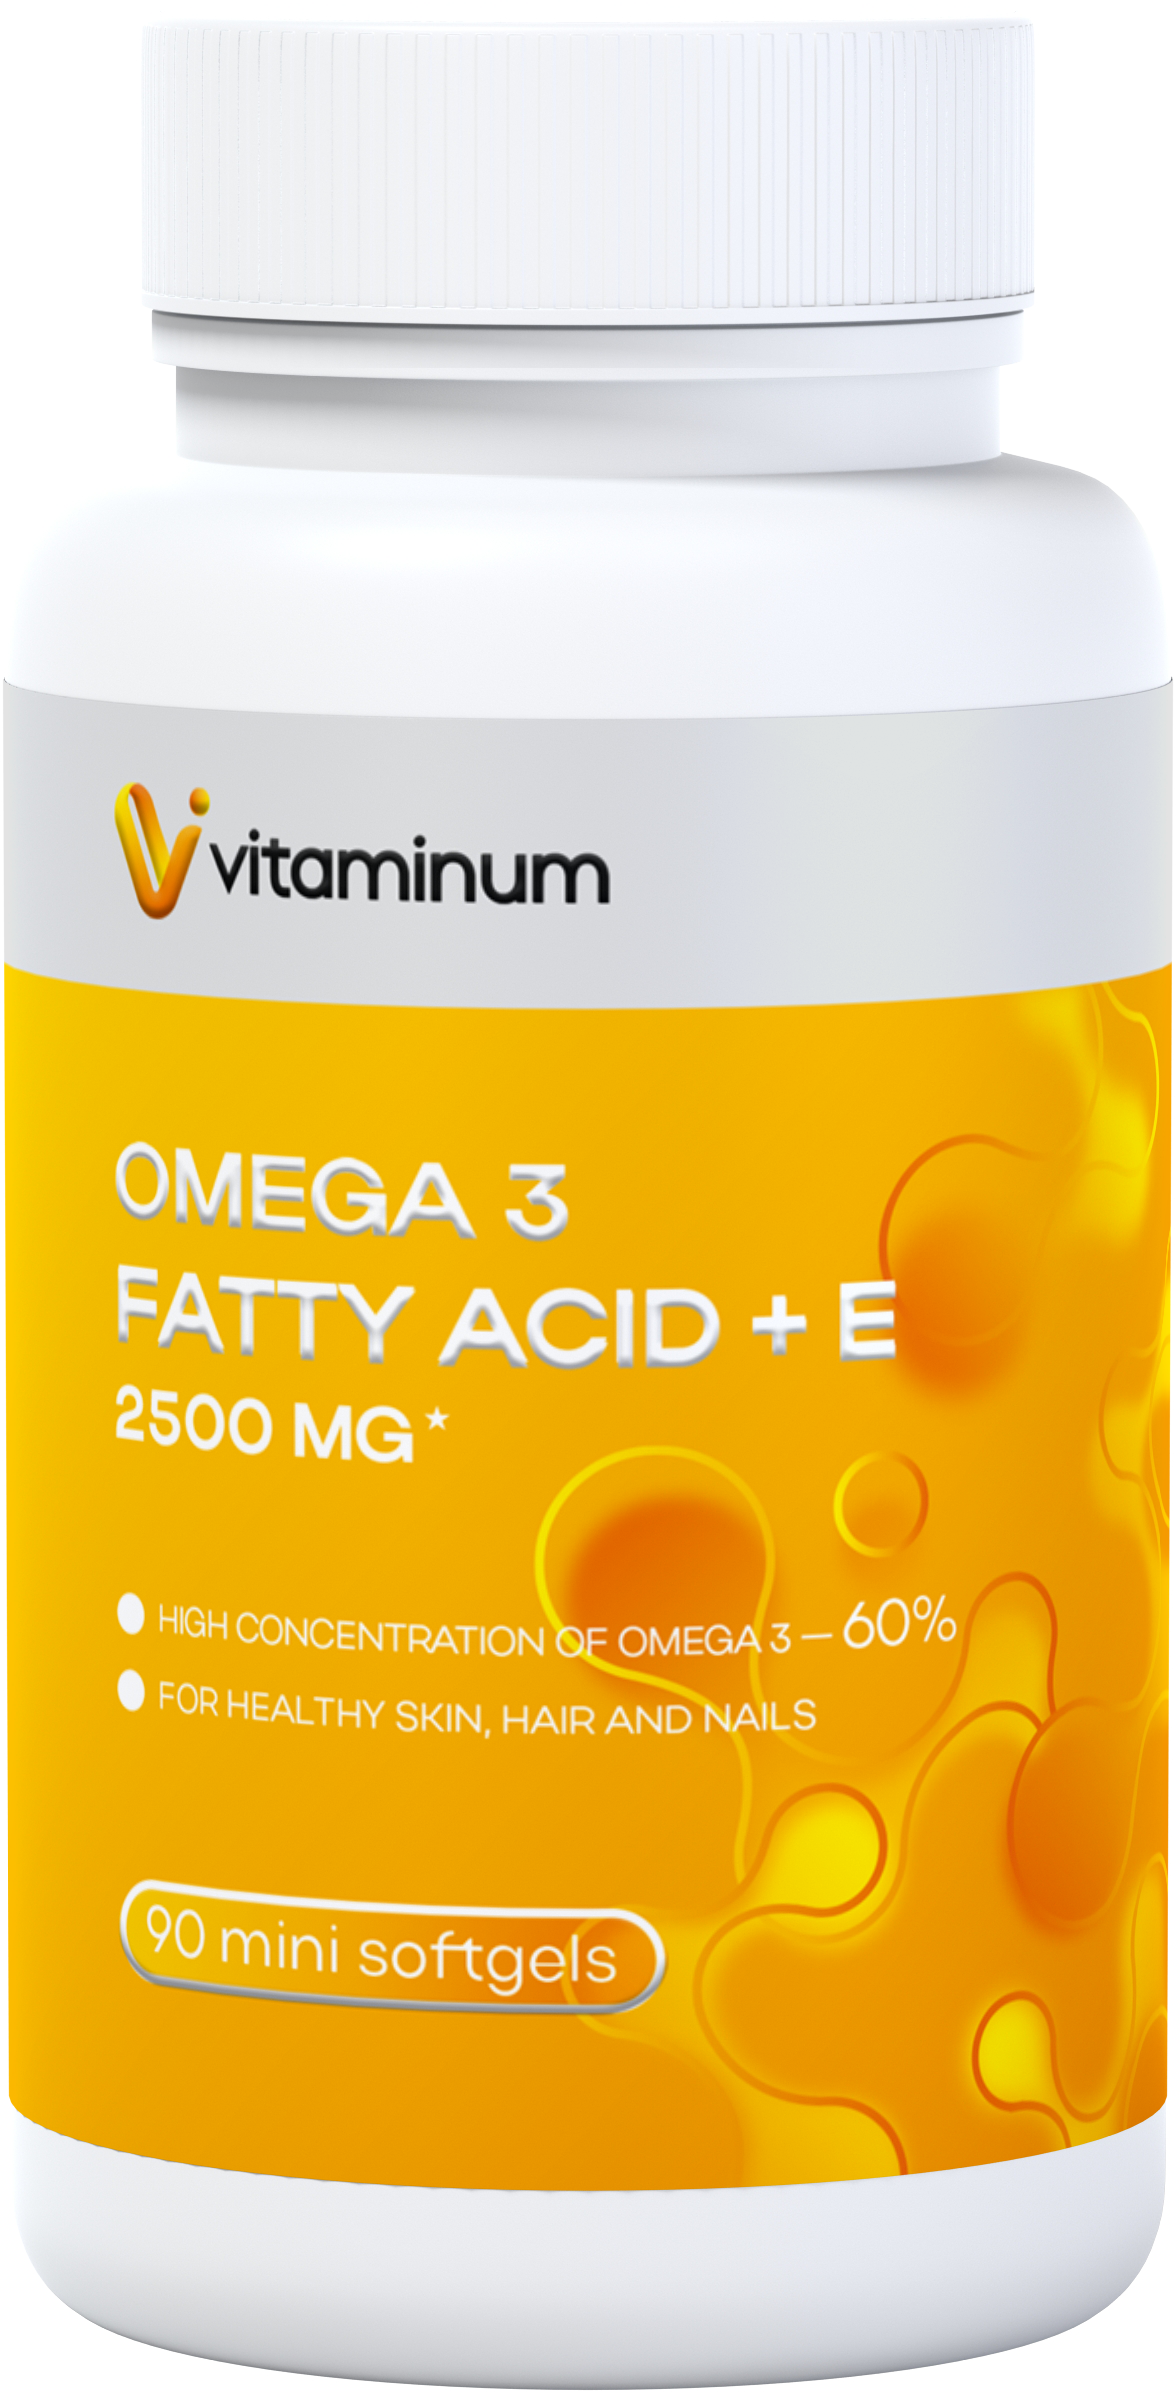  Vitaminum ОМЕГА 3 60% + витамин Е (2500 MG*) 90 капсул 700 мг   в Крыме